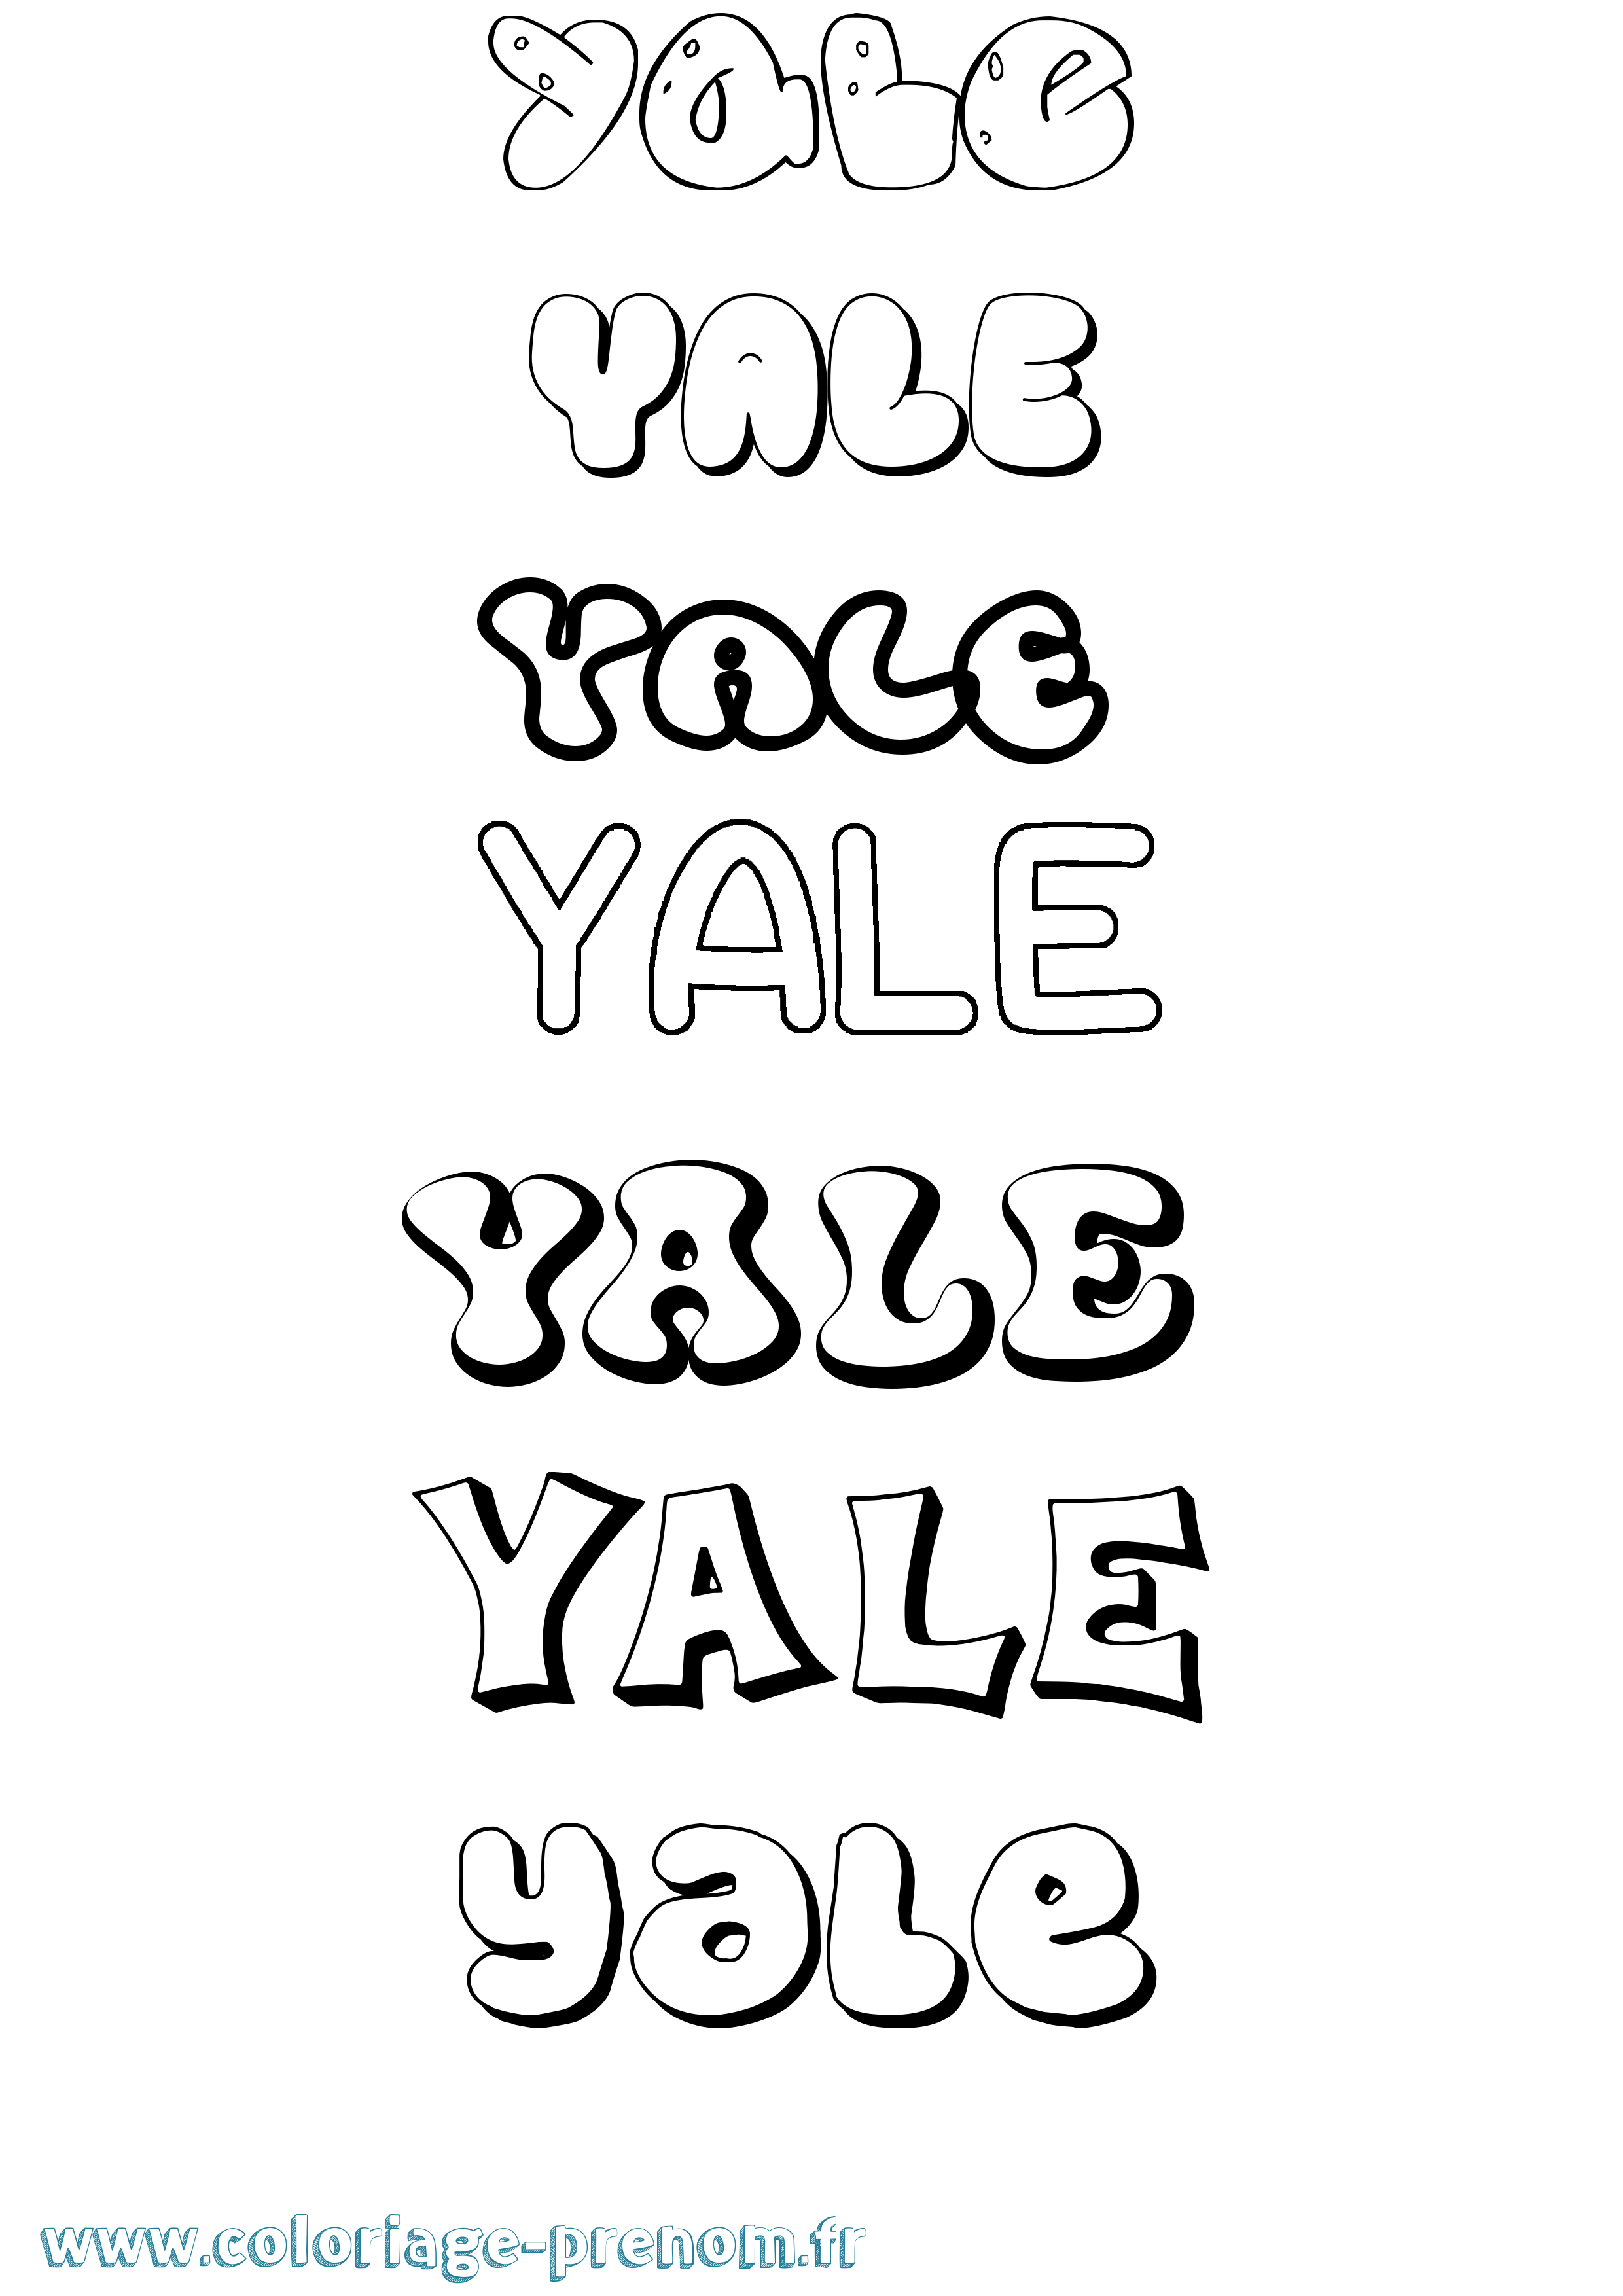 Coloriage prénom Yale Bubble